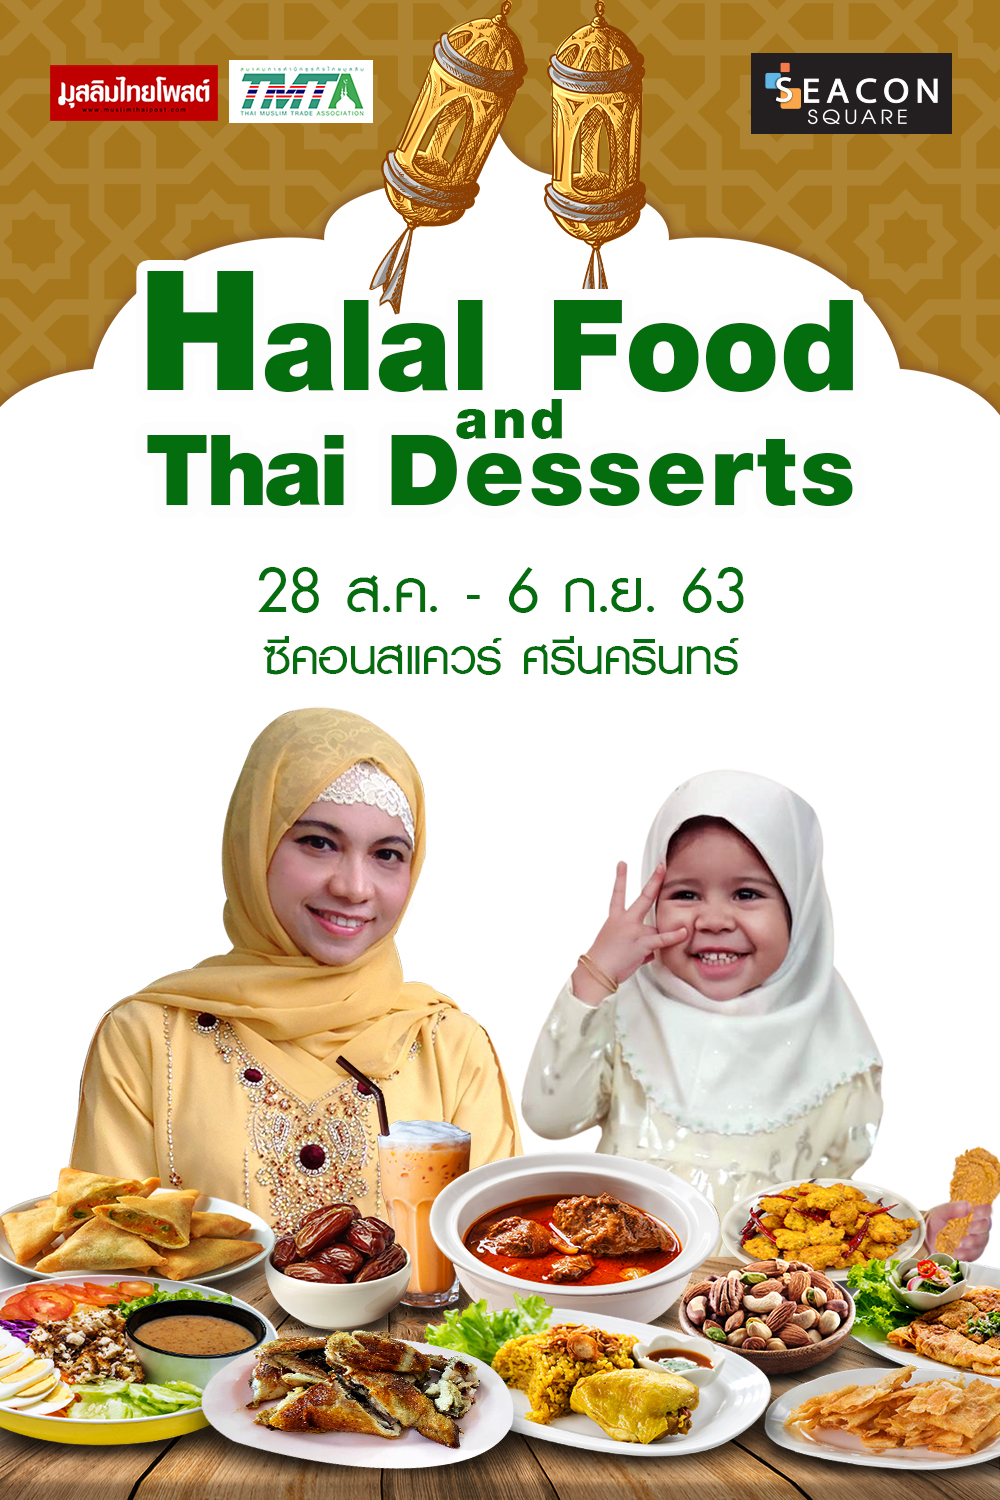 ซีคอนสแควร์ จัดงาน Halal Food and Thai Desserts เสิร์ฟสารพัดเมนูอาหารฮาลาลครั้งใหญ่แห่งปี